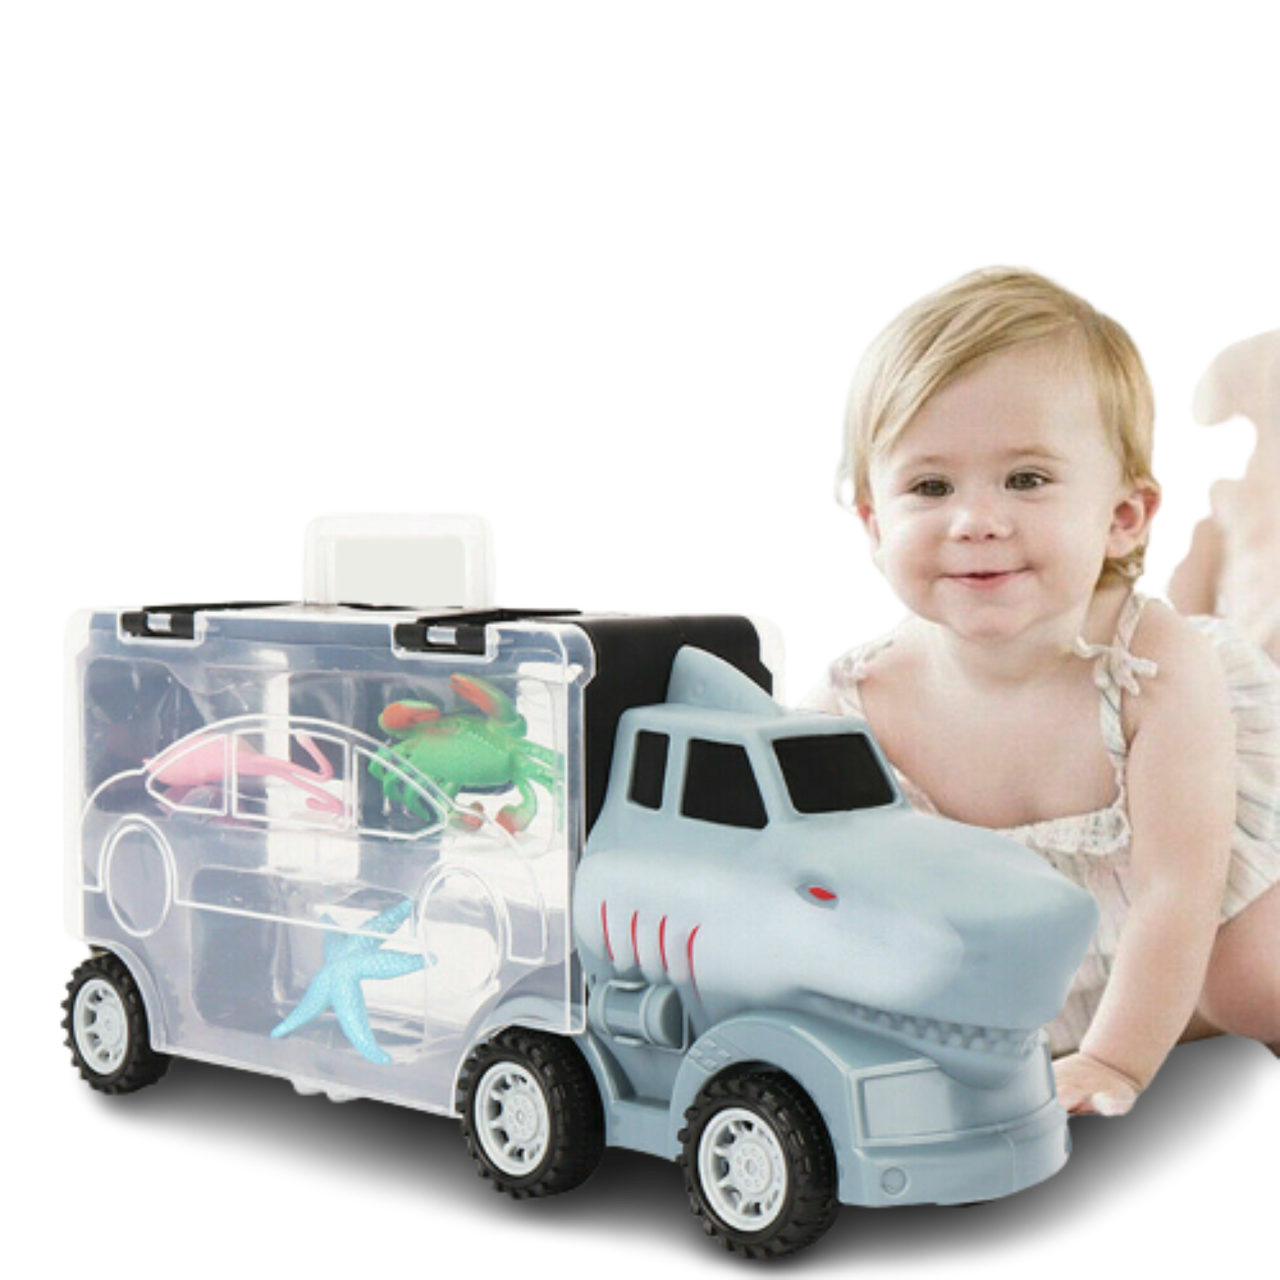 Transport Carrier Car Toy Set